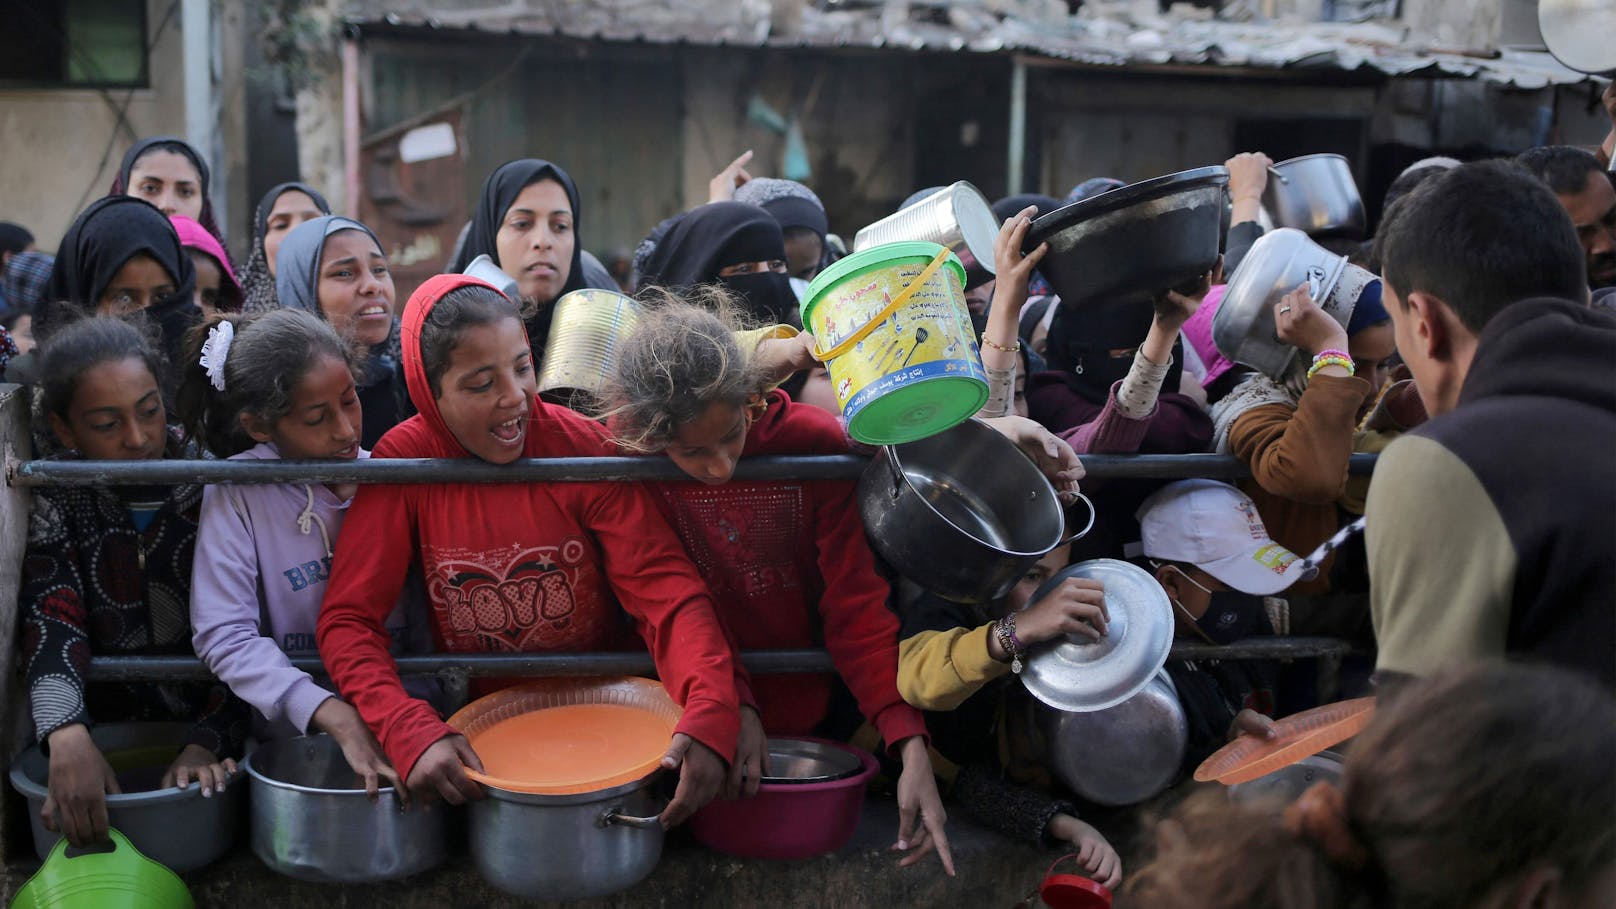 Mehreren Berichten zufolge fehlt es am Gaza-Streifen an Nahrungsmitteln und medizinischer Versorgung, während sich Infektionskrankheiten ausbreiten.